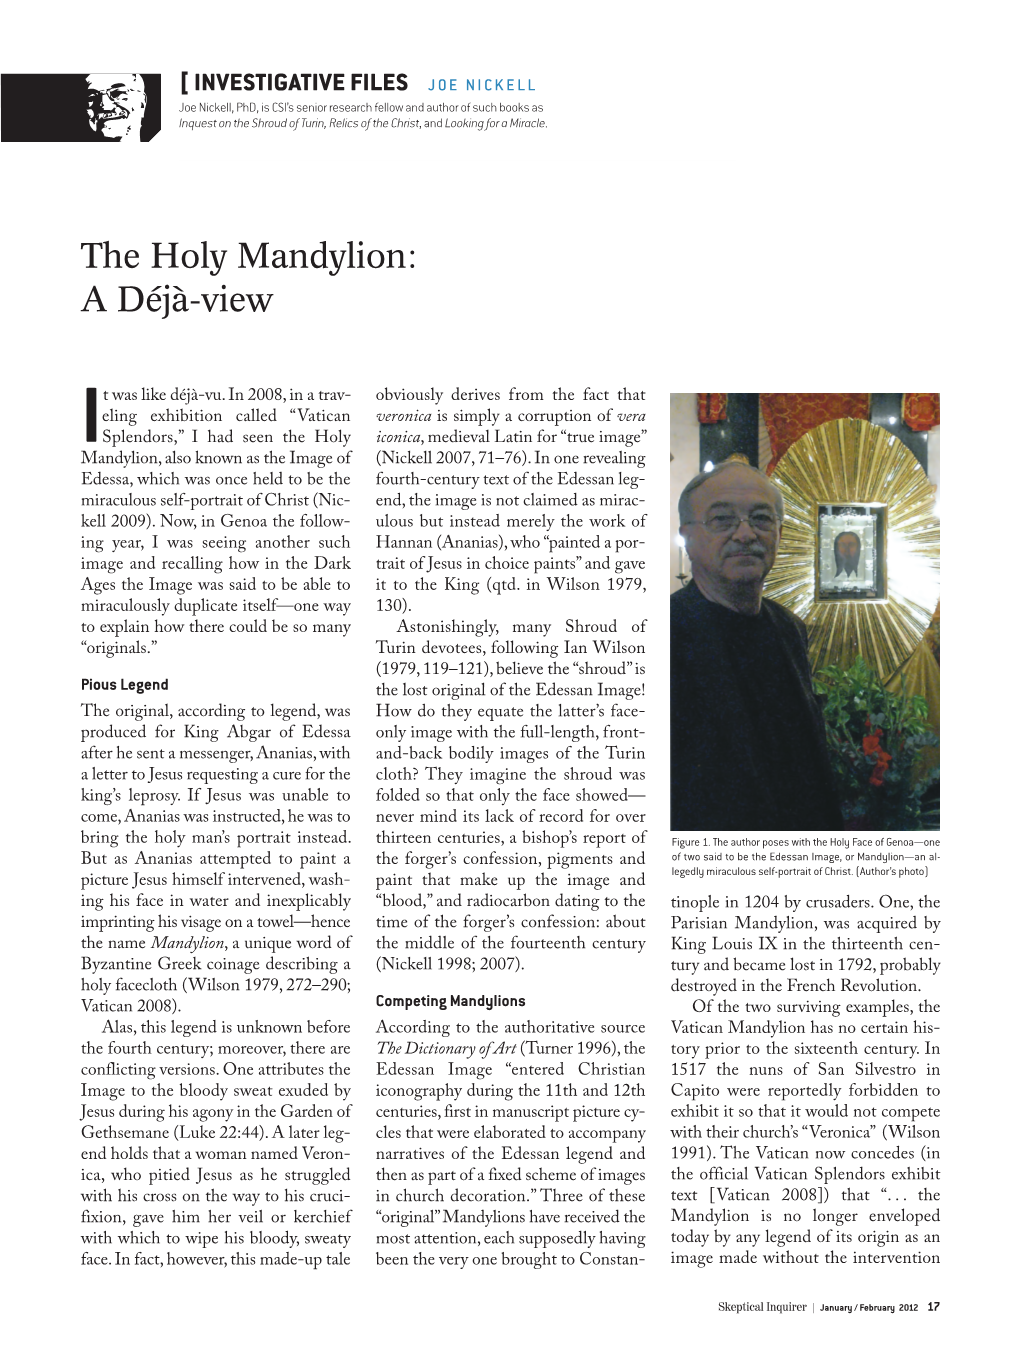 The Holy Mandylion: a Déjà-View